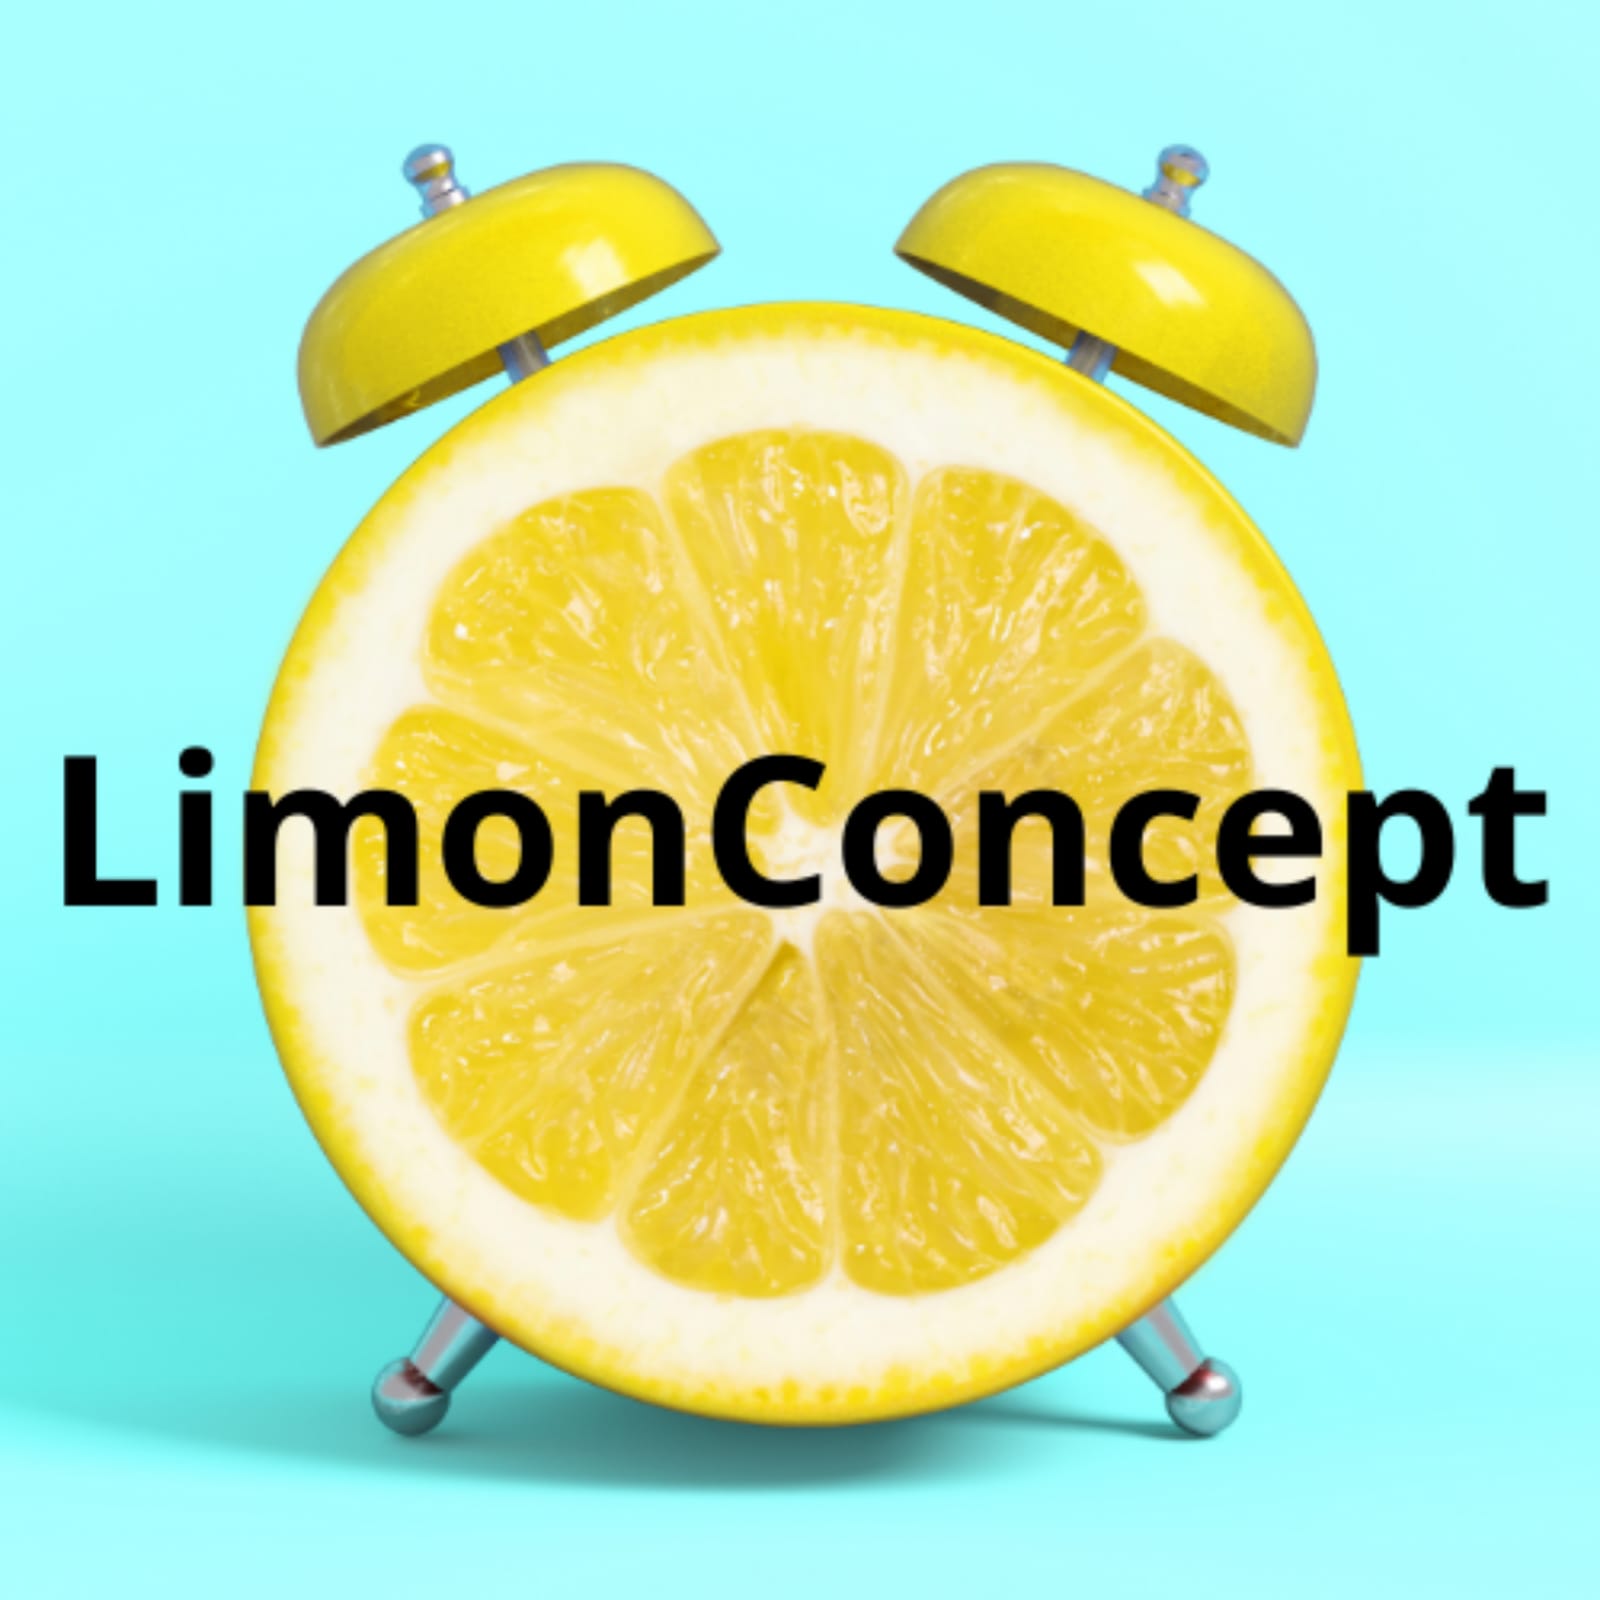 LimonConcept